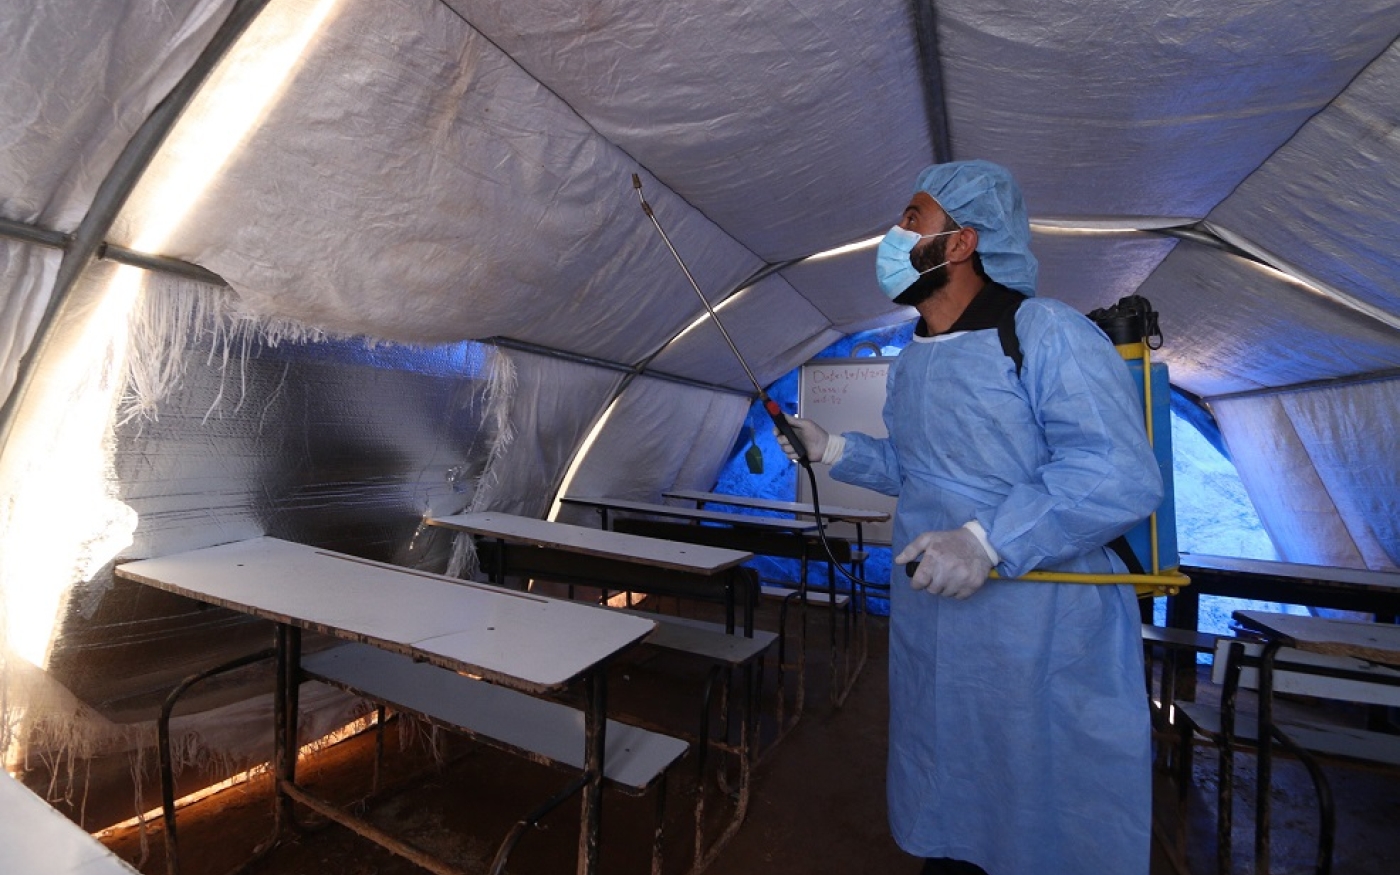 Les travailleurs humanitaires du camp de réfugiés d’Atmeh ont pulvérisé un désinfectant sur toutes les surfaces pour empêcher la propagation du coronavirus (MEE/Yousef Gharibi)